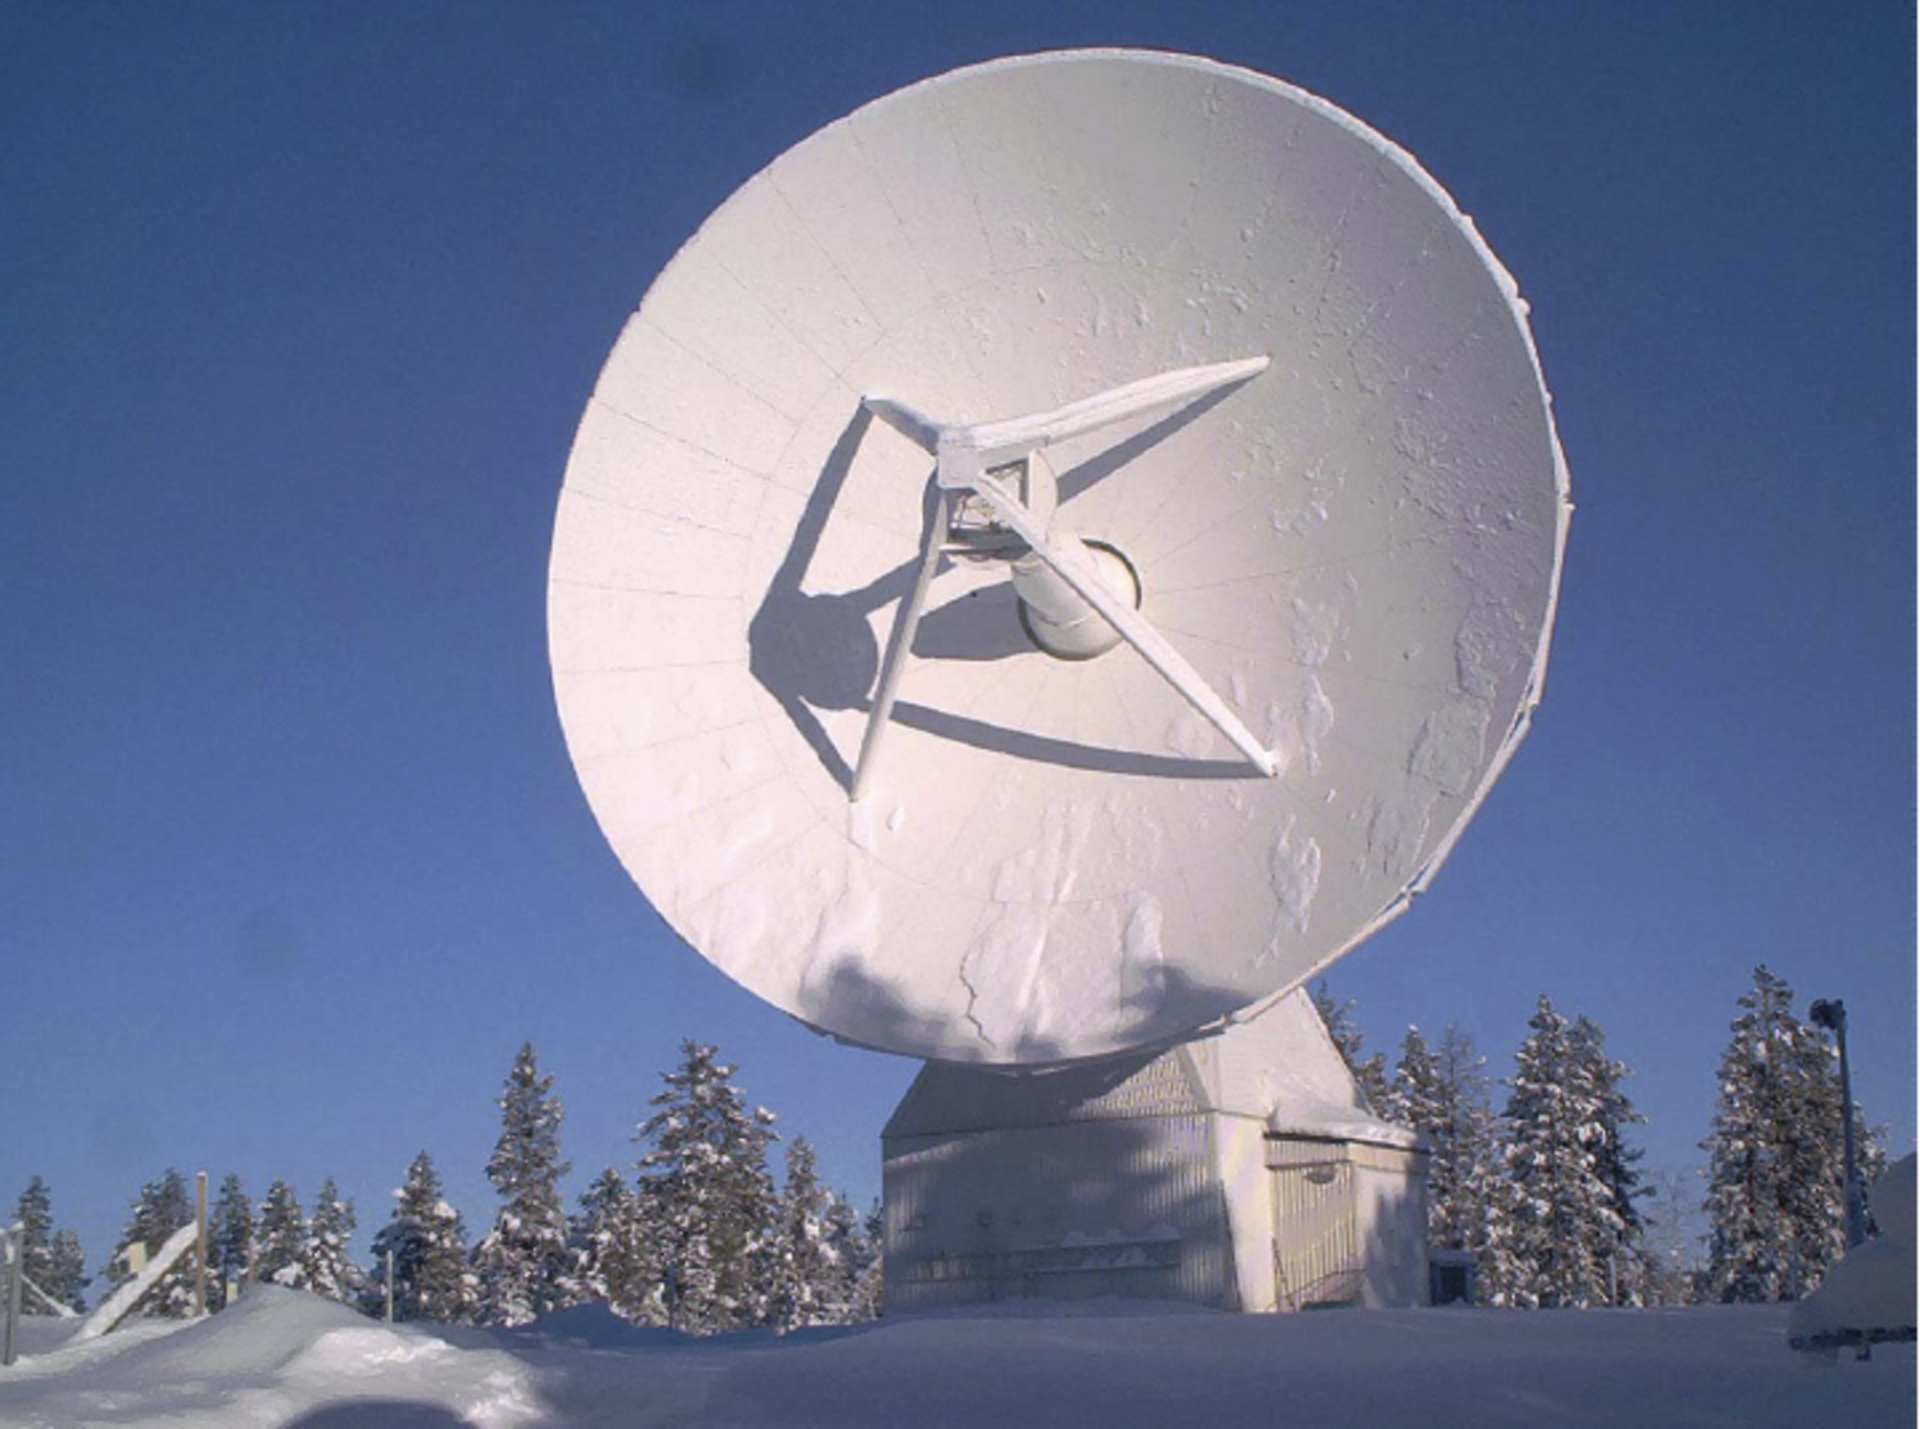 ESTRACK Kiruna station: acquiring telemetry from GOCE